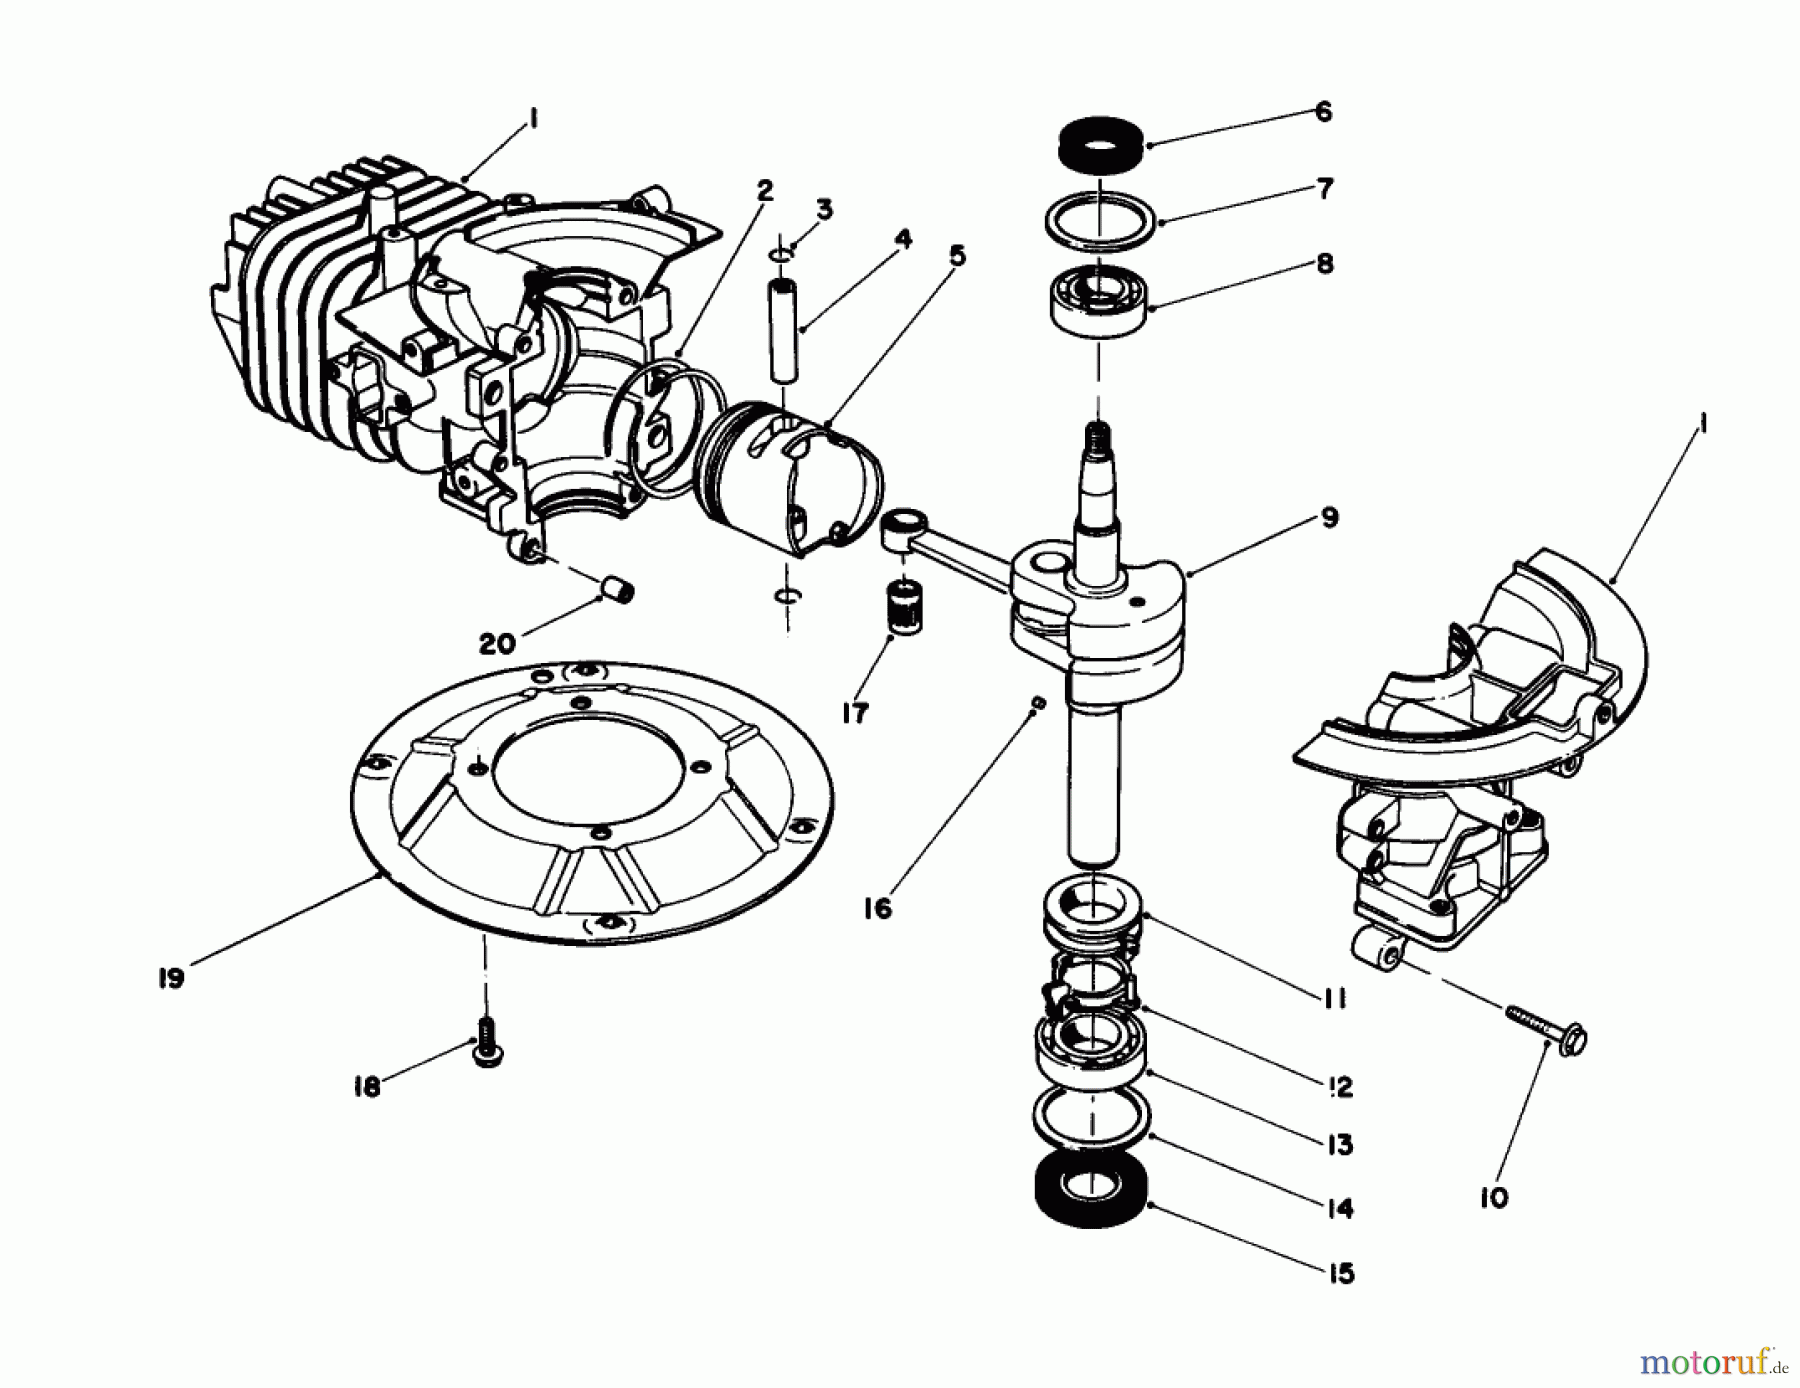  Toro Neu Mowers, Walk-Behind Seite 1 20581 - Toro Lawnmower, 1988 (8000001-8999999) ENGINE ASSEMBLY (ENGINE MODEL NO. 47PH7)